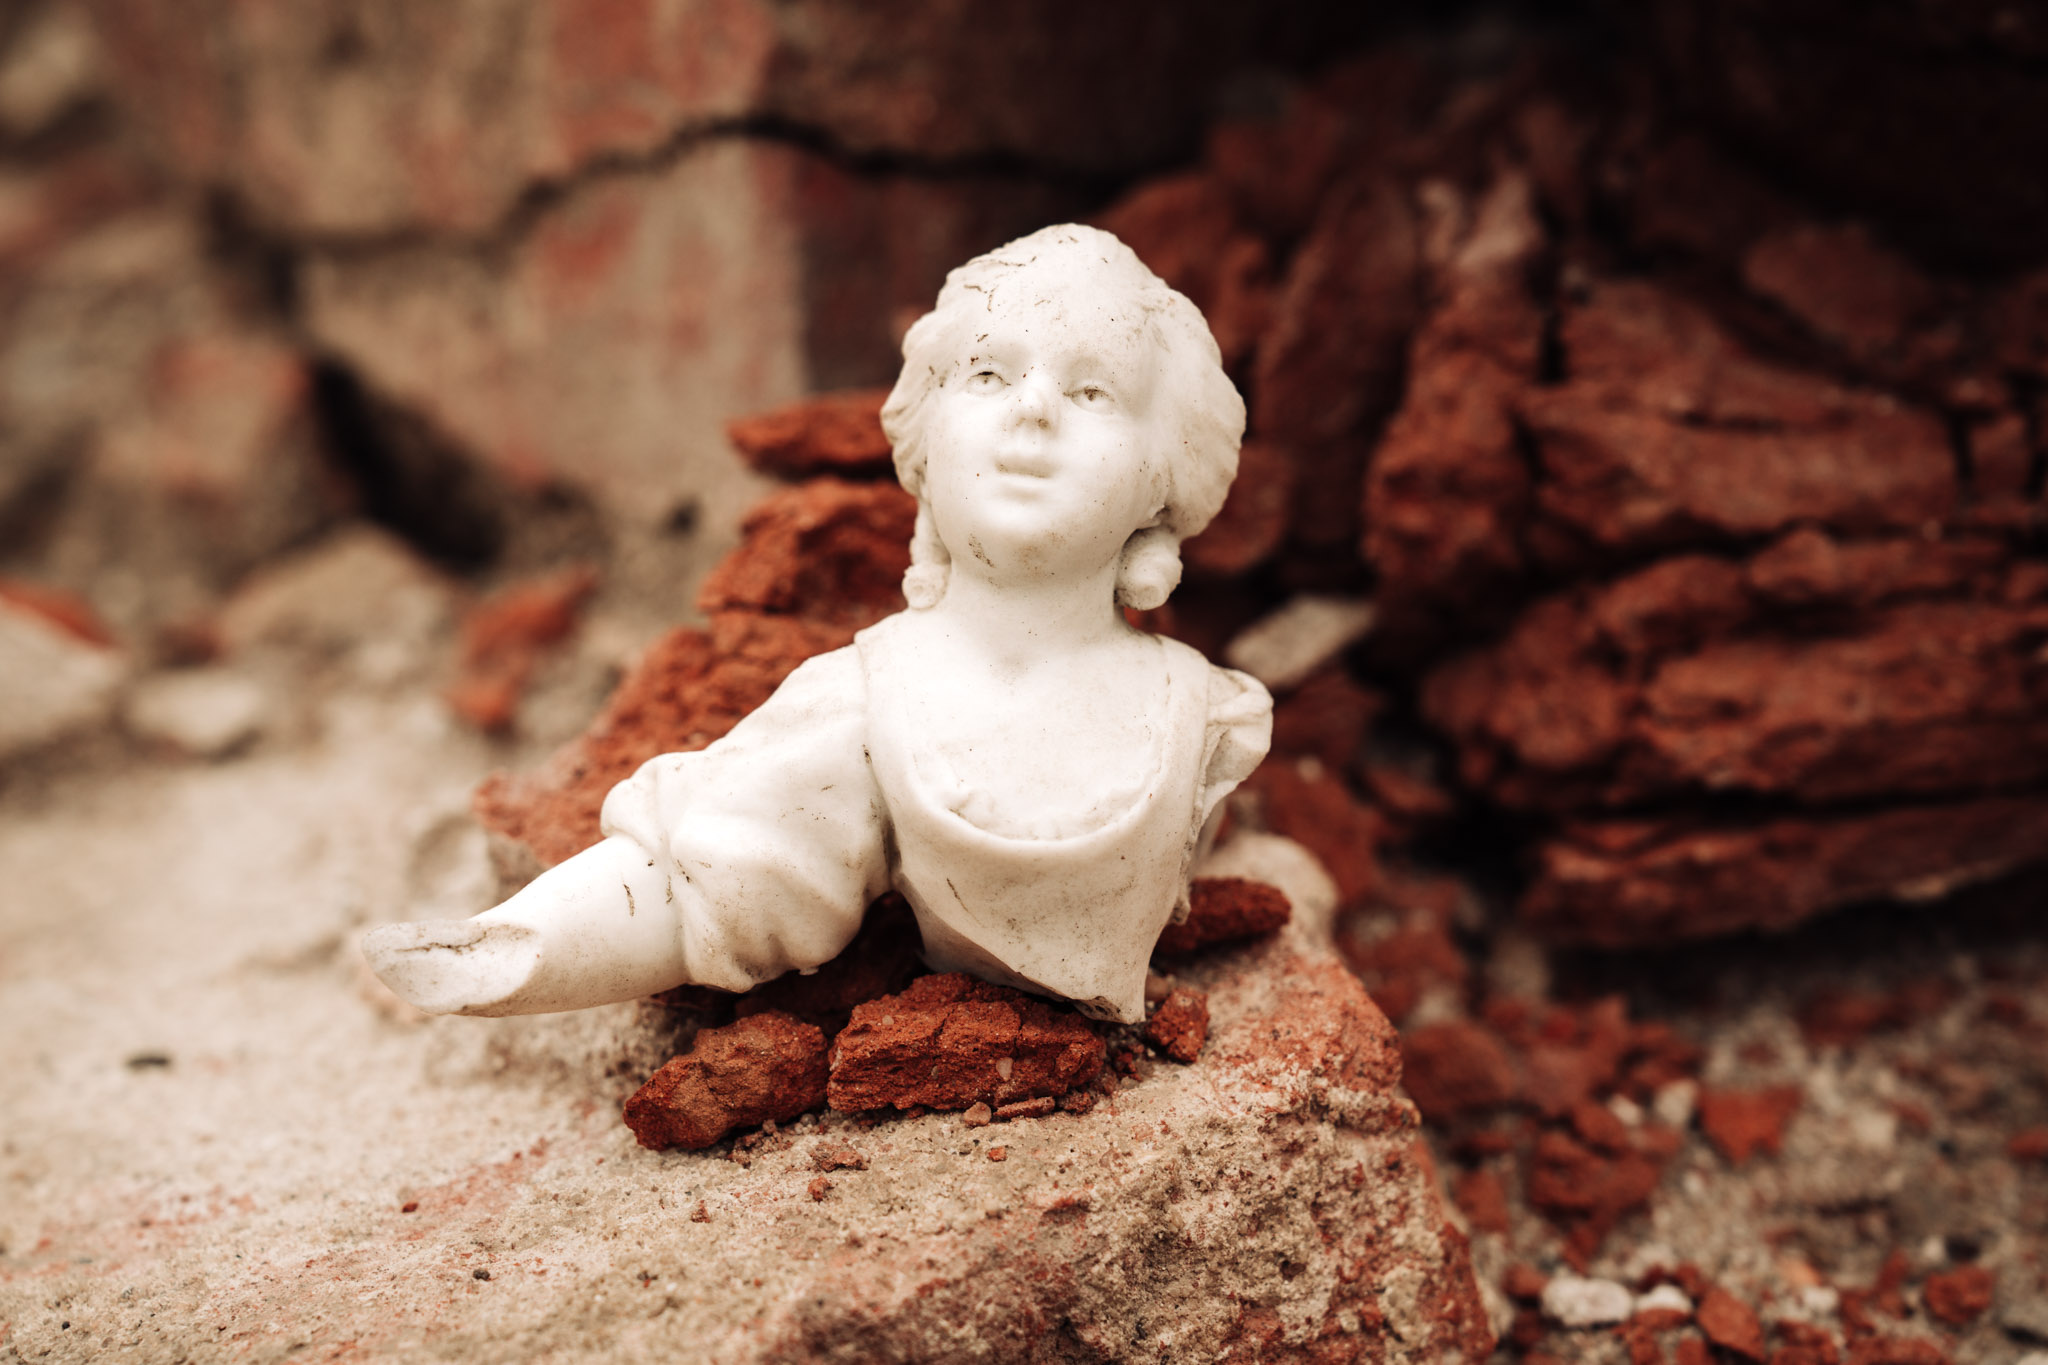 Górna część białej porcelanowej figurki przedstawiającej postać kobiecą. Głowa uniesiona do góry, prawa ręka wyciągnięta do przodu. W tle pozostałości ceglanych murów Pałacu Saskiego.